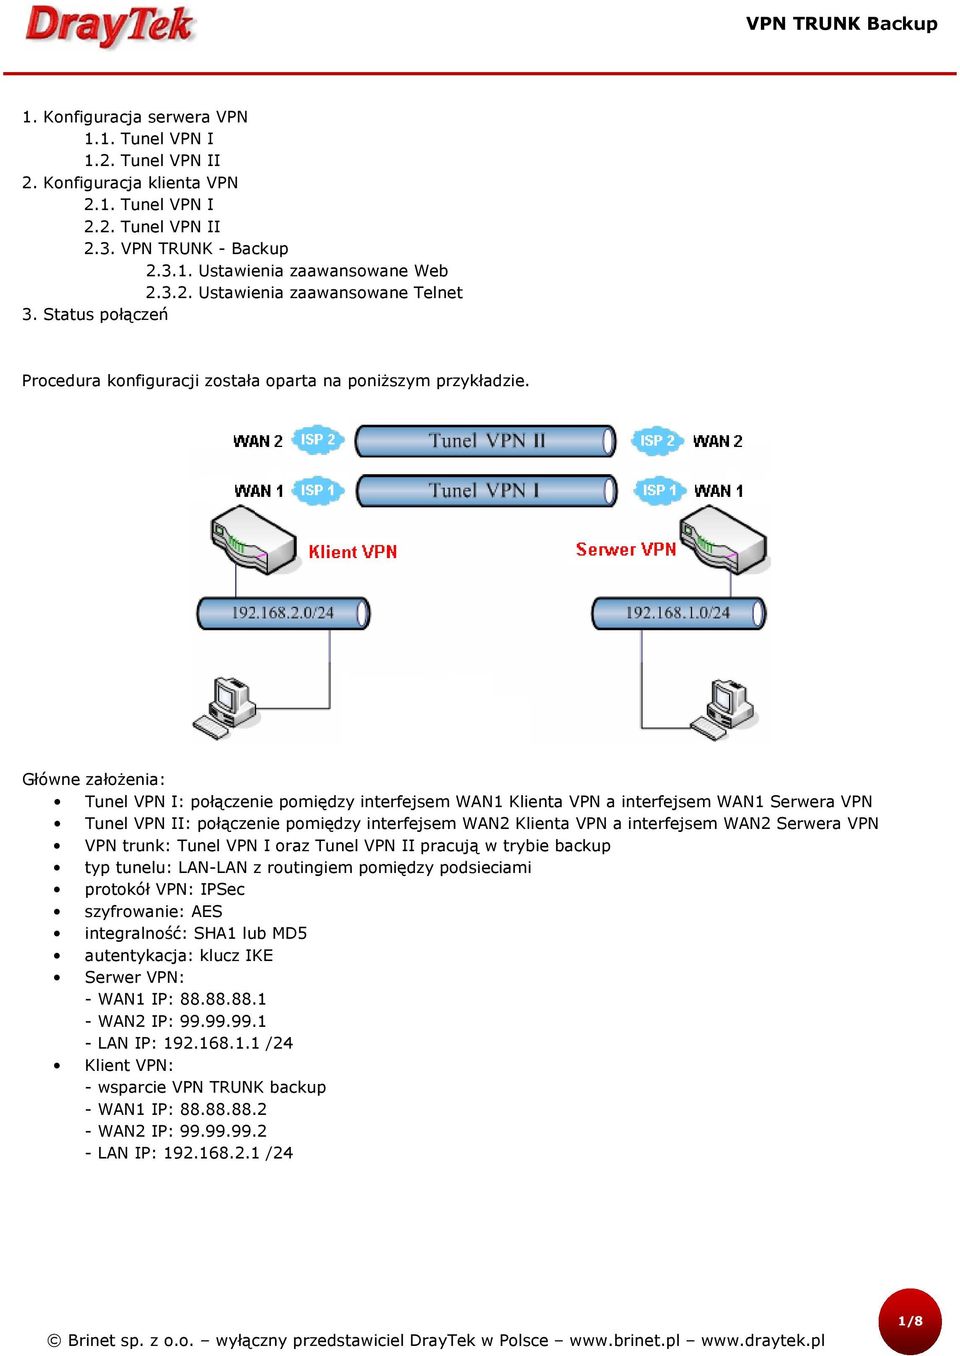 Główne założenia: Tunel VPN I: połączenie pomiędzy interfejsem WAN1 Klienta VPN a interfejsem WAN1 Serwera VPN Tunel VPN II: połączenie pomiędzy interfejsem WAN2 Klienta VPN a interfejsem WAN2